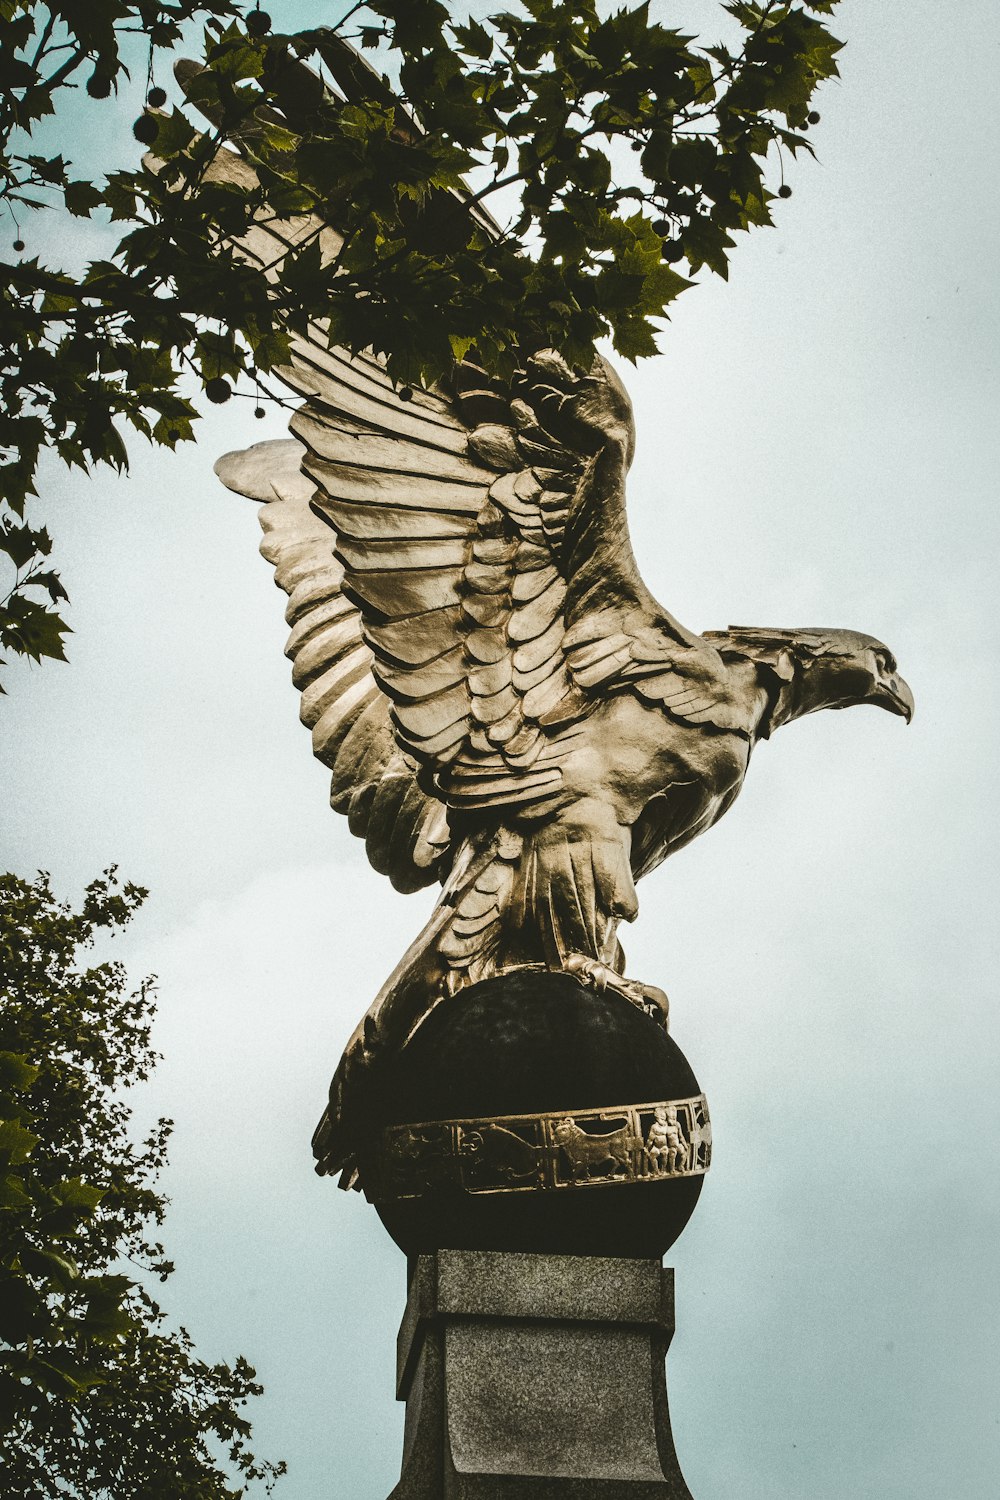 a statue of a bird